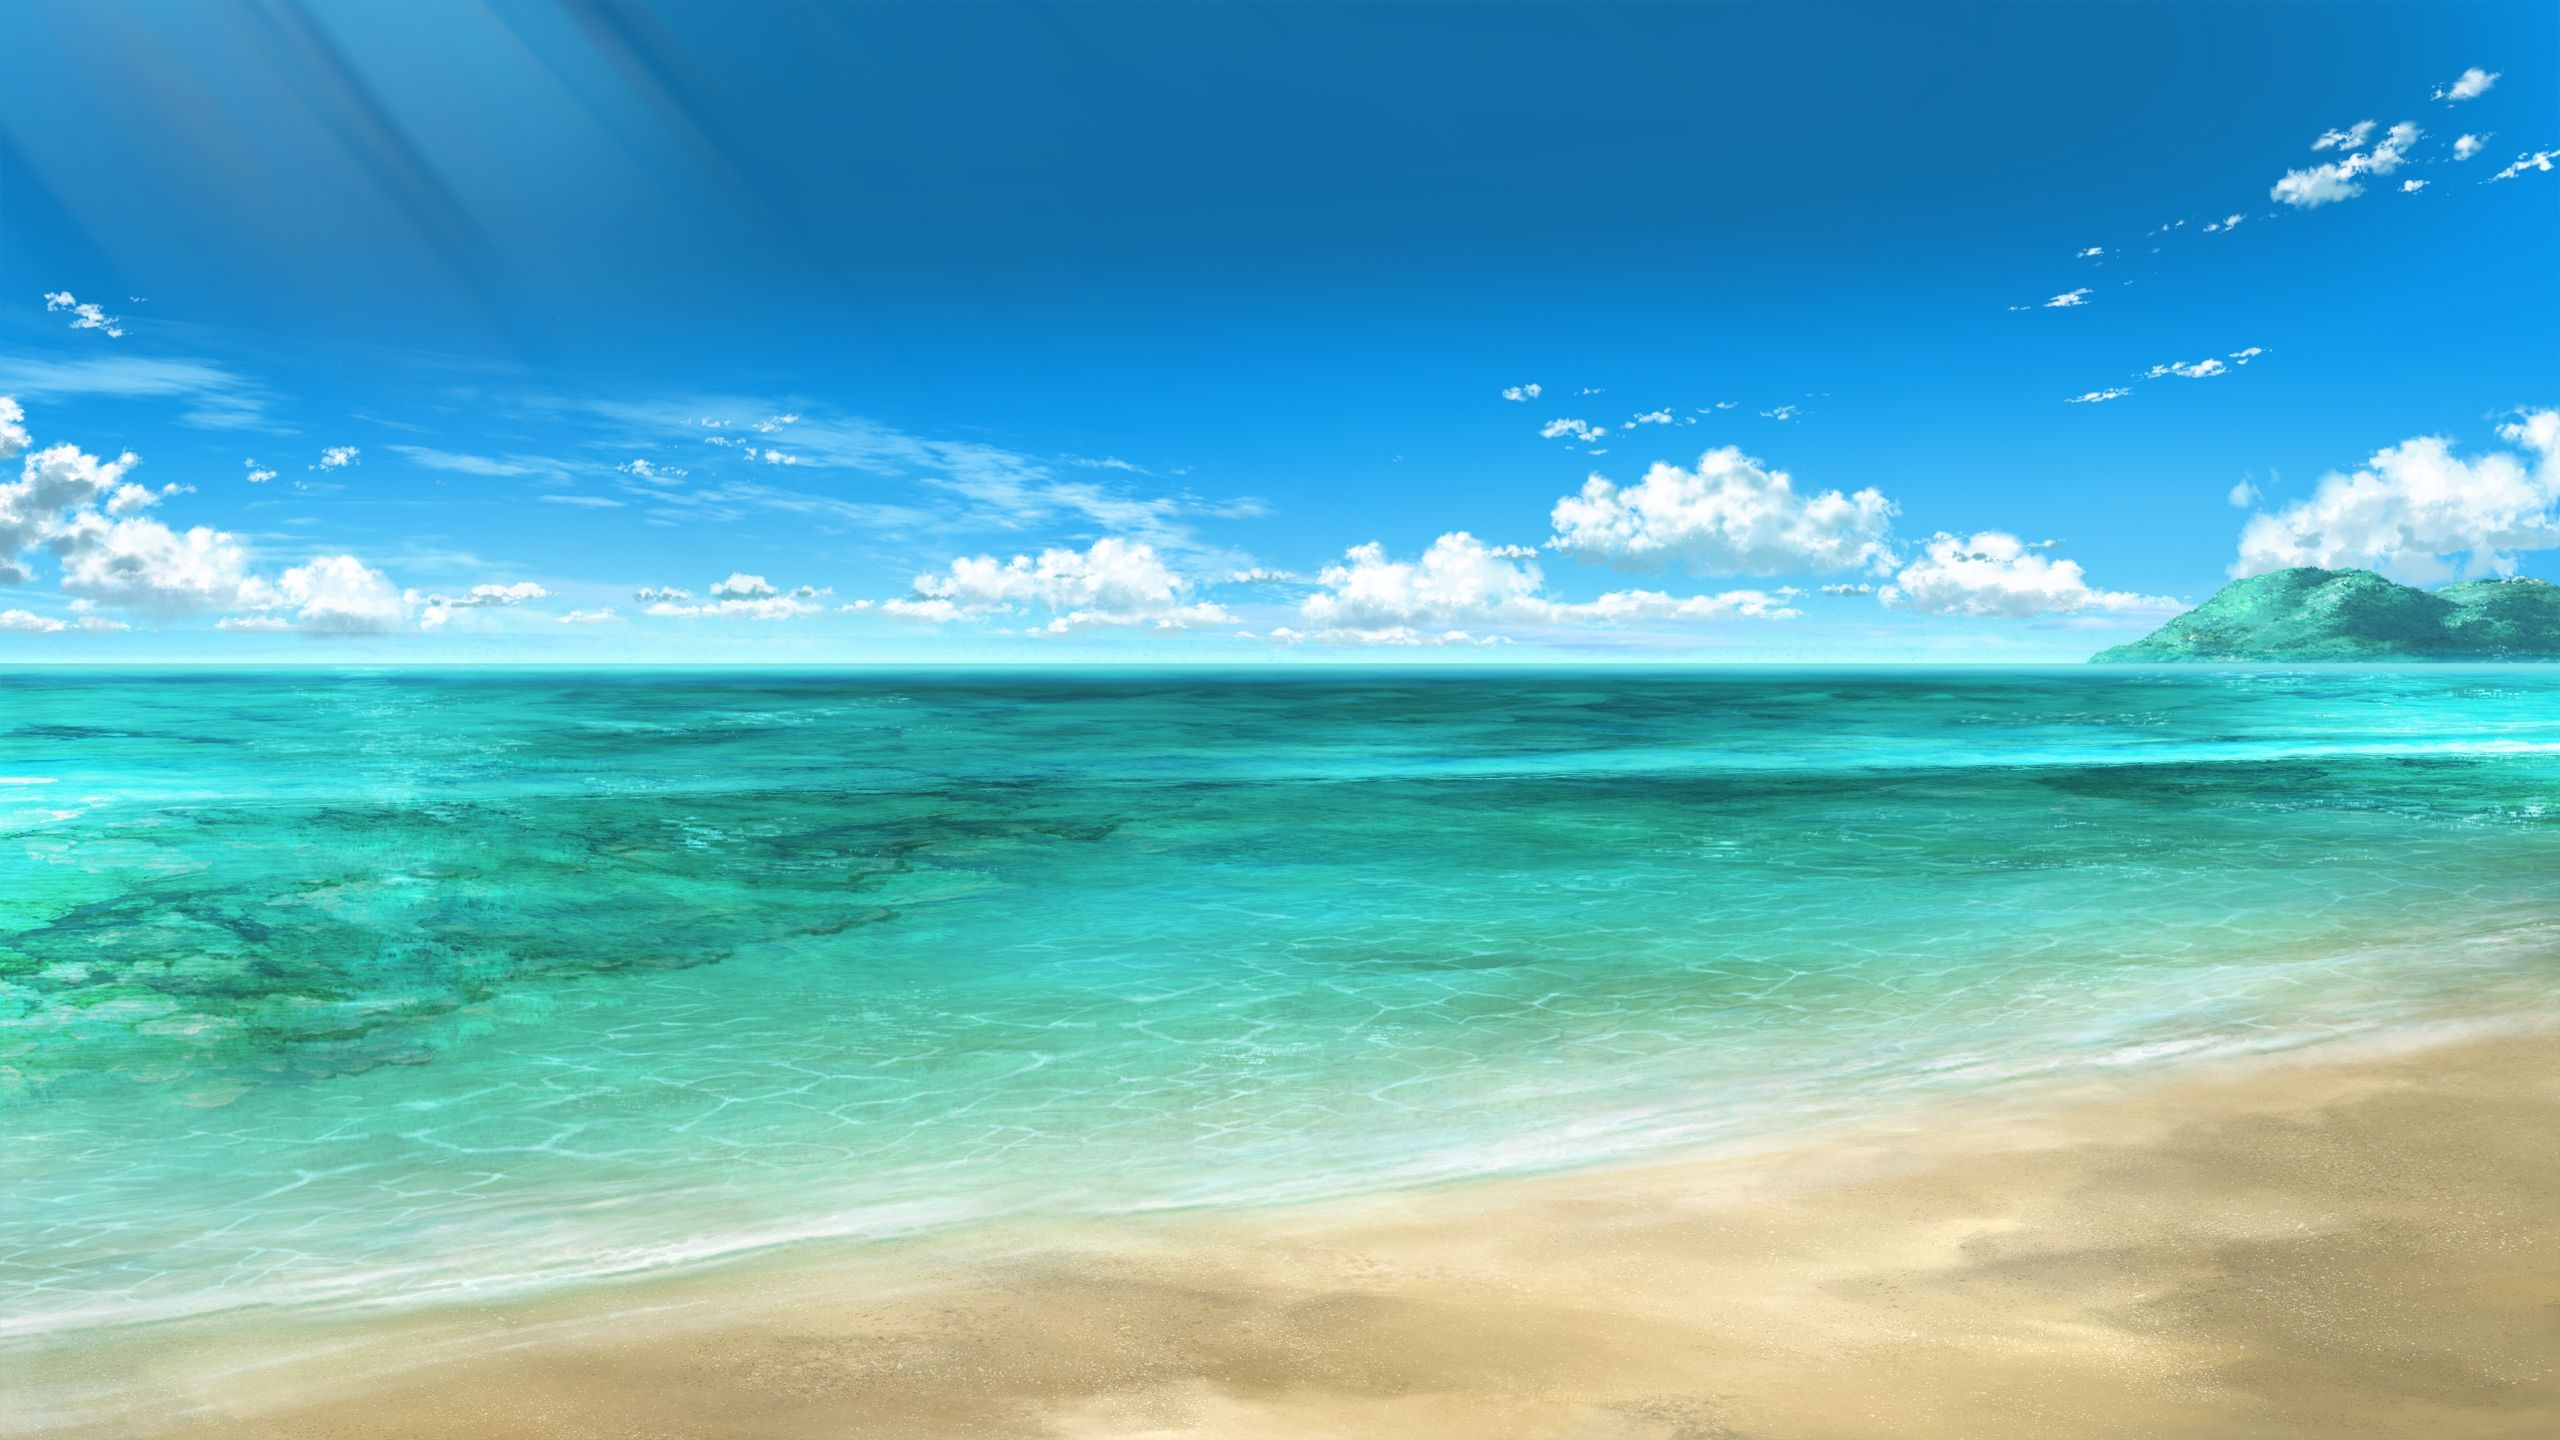 Seaside Desktop Background wallpaper free. Seaside